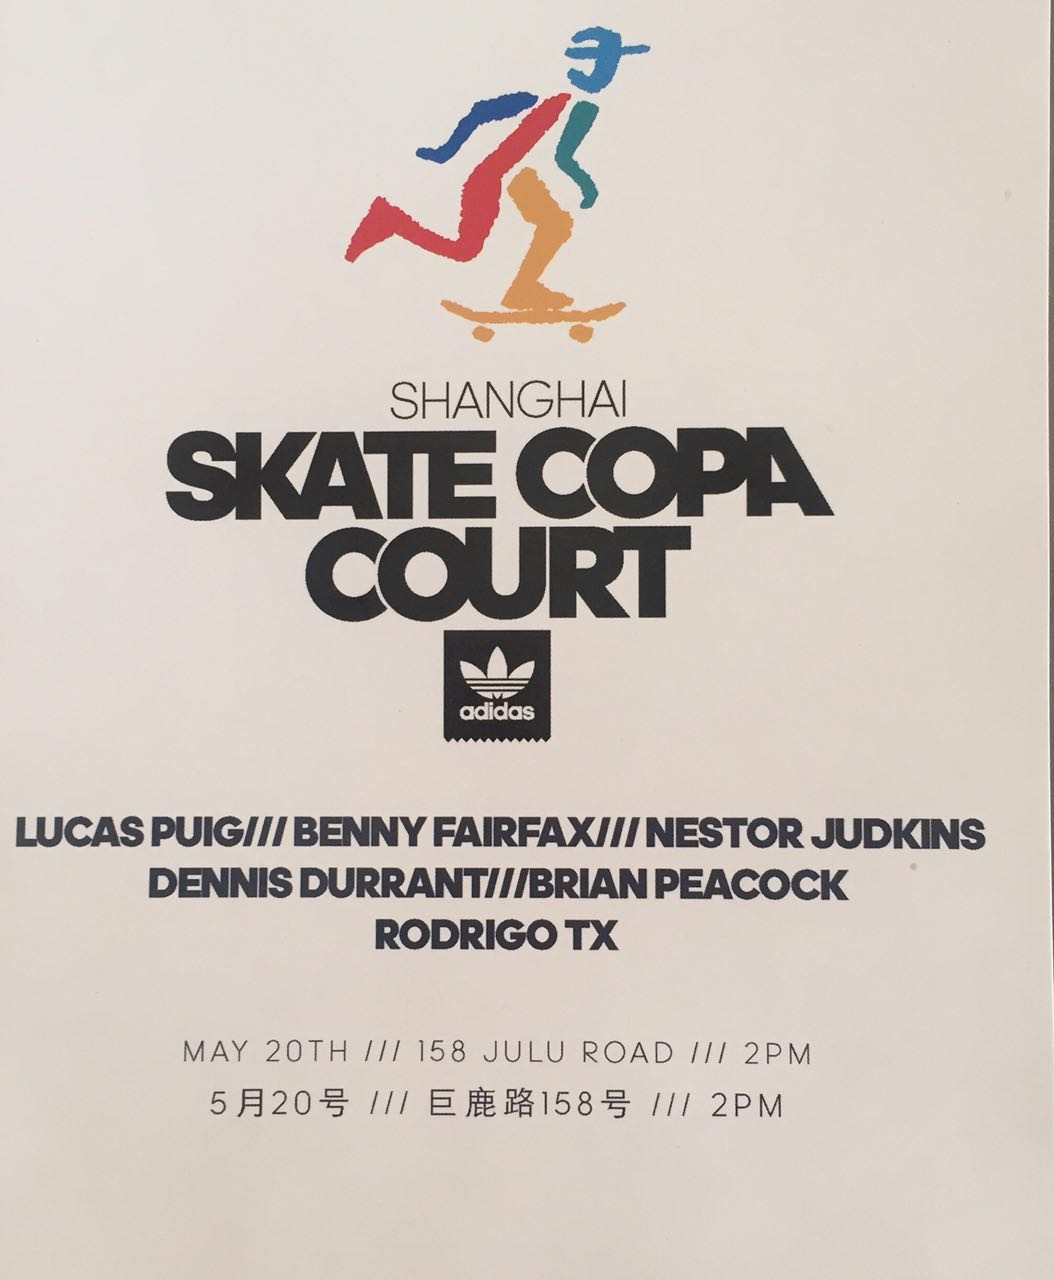 Shanghai Skate Copa Court